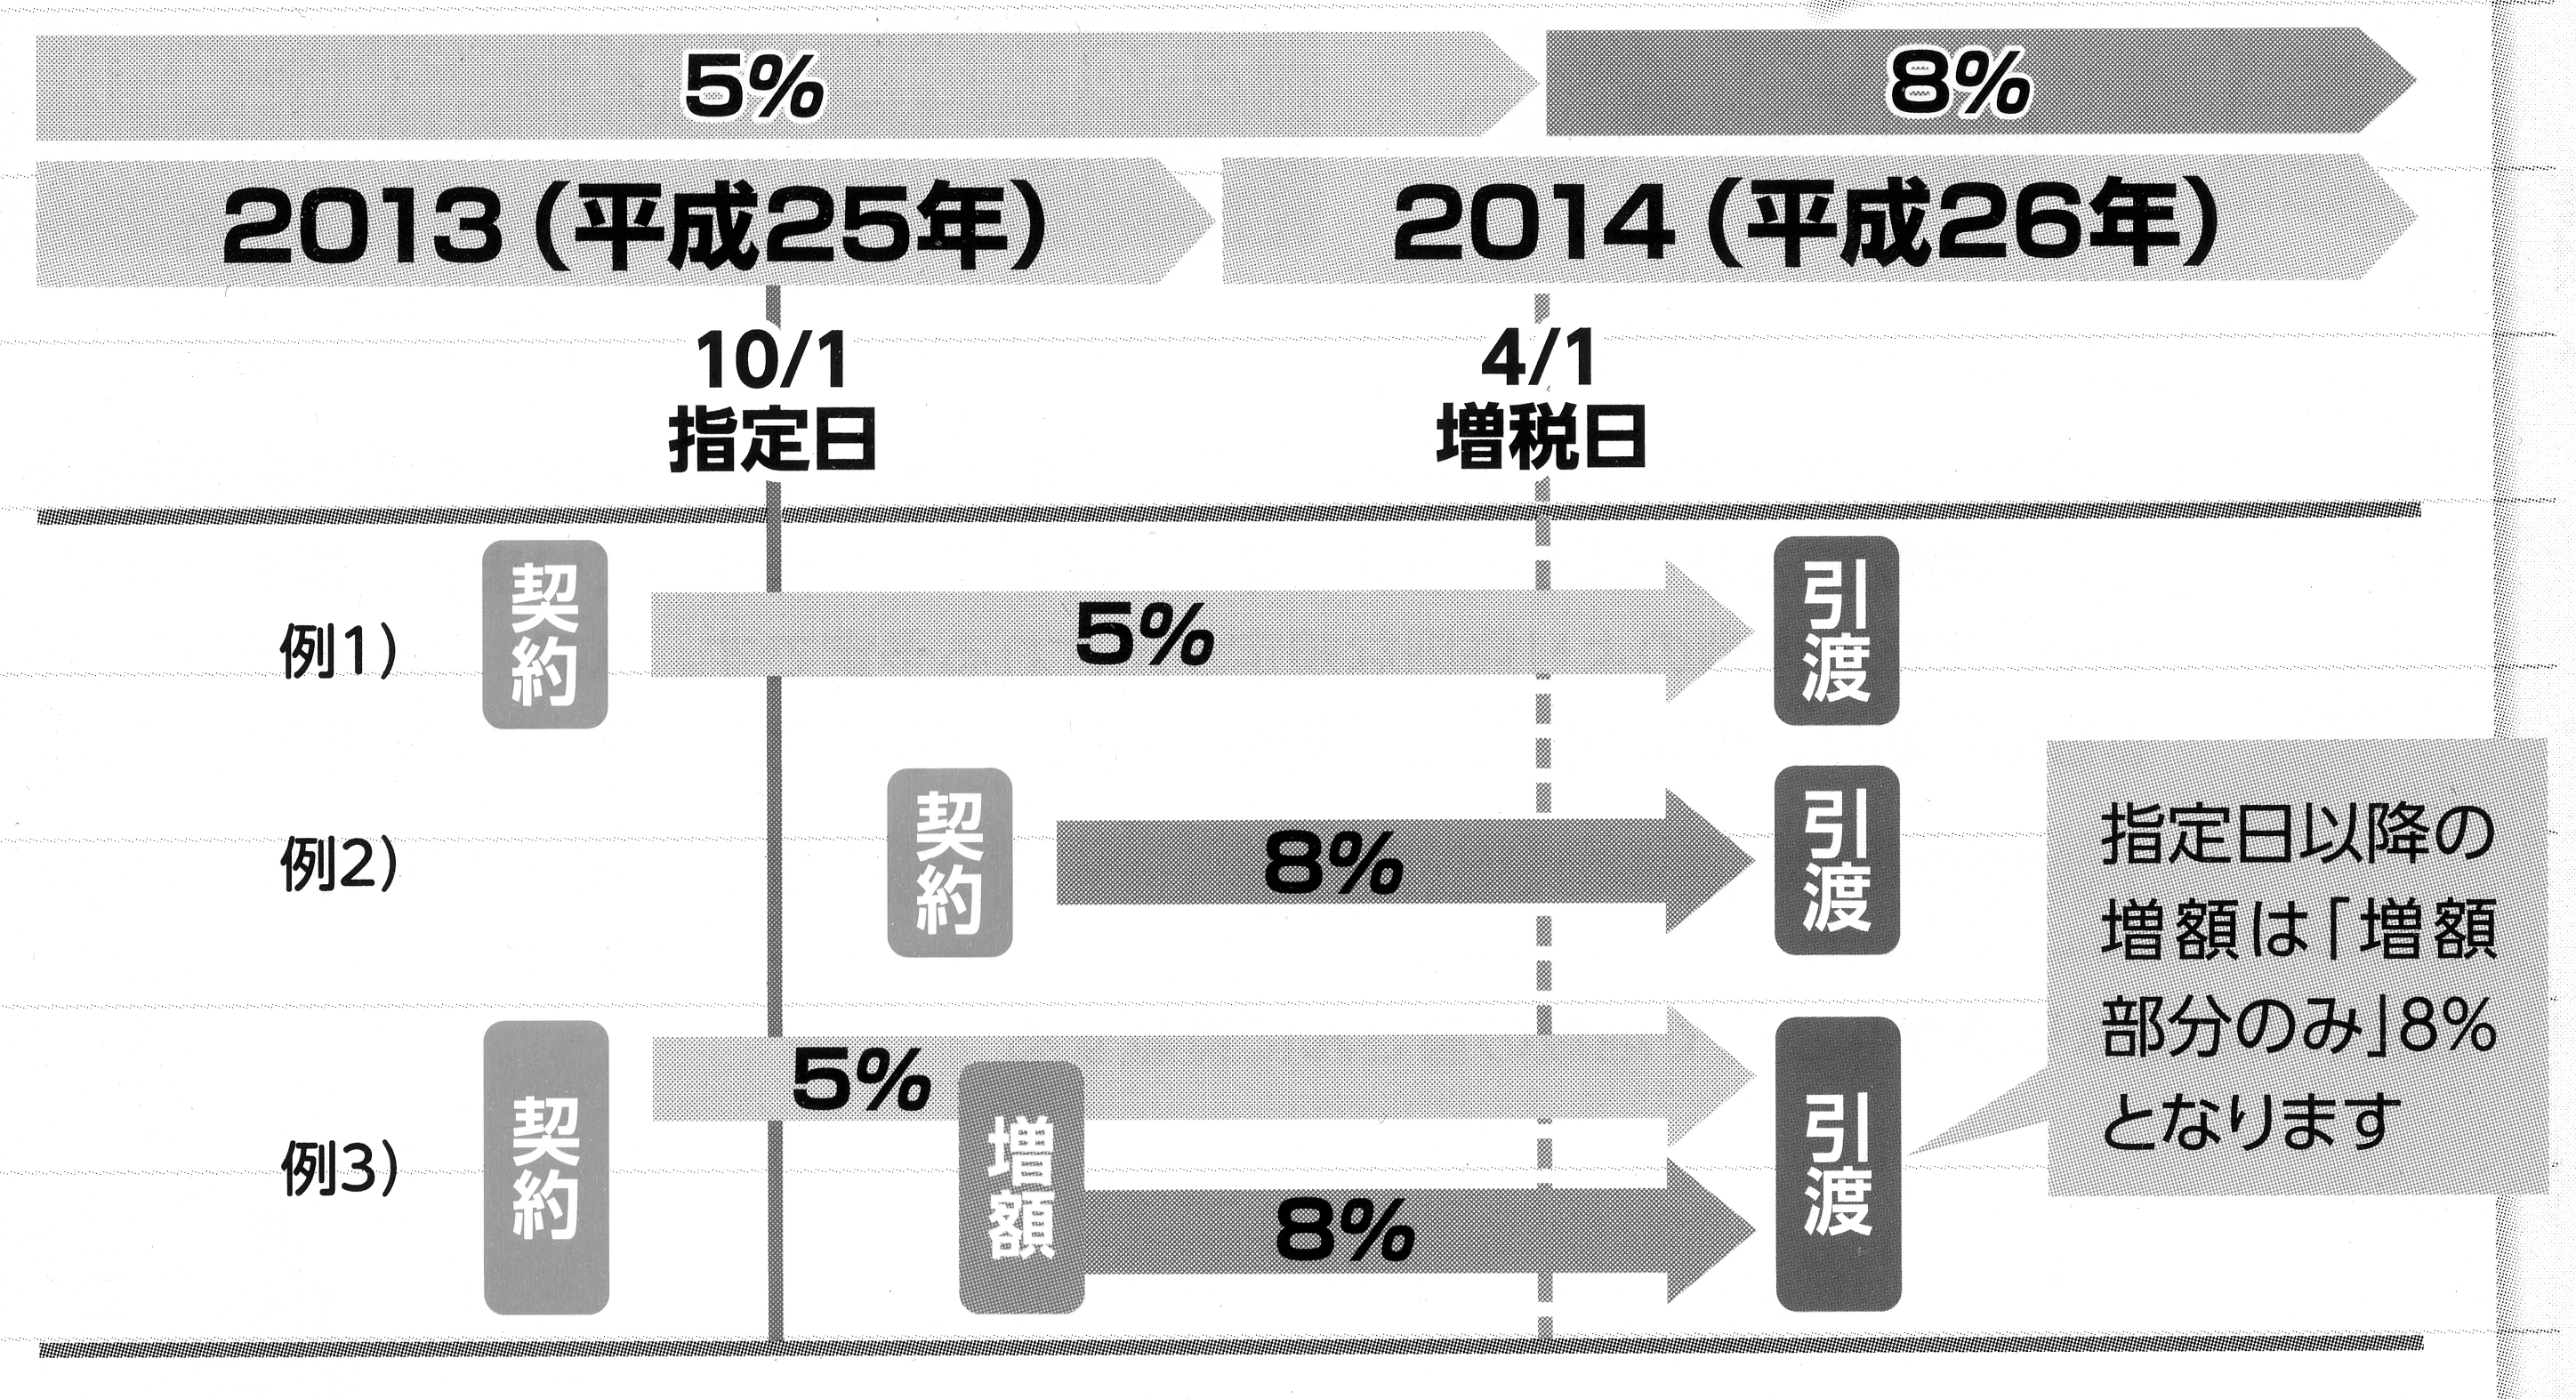 http://www.kyokenro.or.jp/news/%E6%B6%88%E8%B2%BB%E7%A8%8E%E5%BE%8C%E3%81%AE%E5%BC%95%E3%81%8D%E6%B8%A1%E3%81%97003.jpg